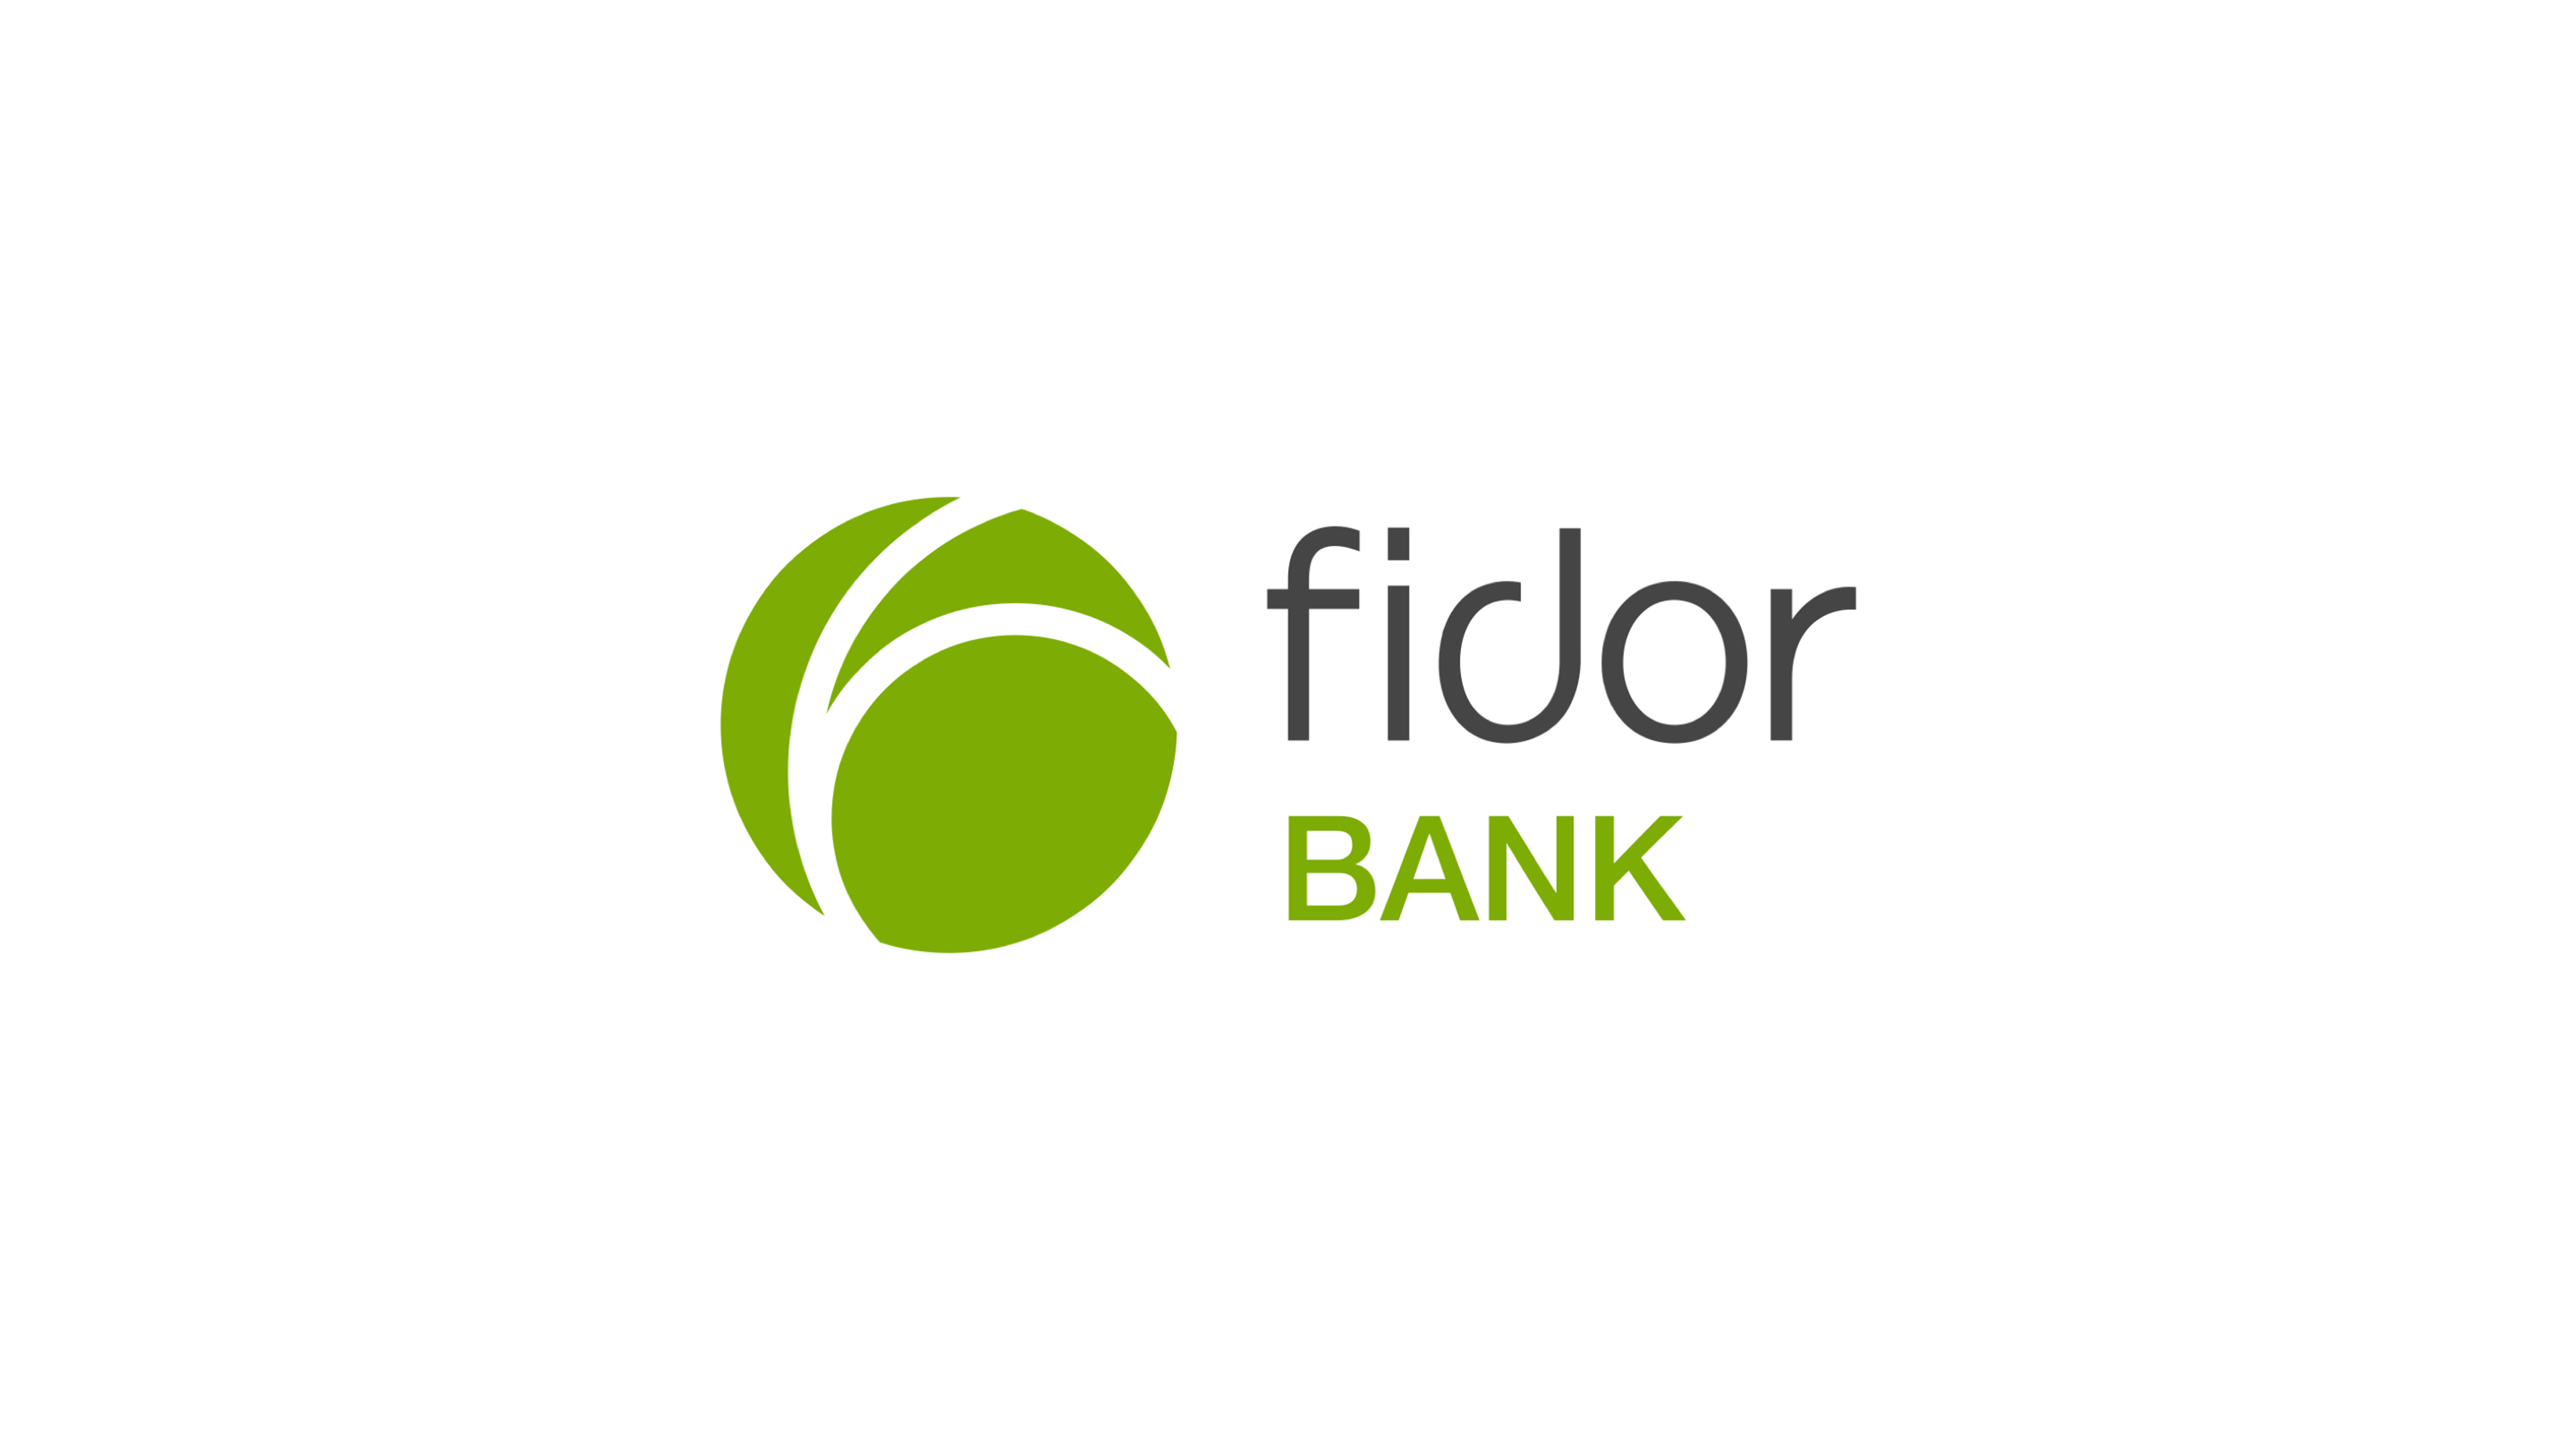 Fidor Bank und Circula geben Partnerschaft bekannt